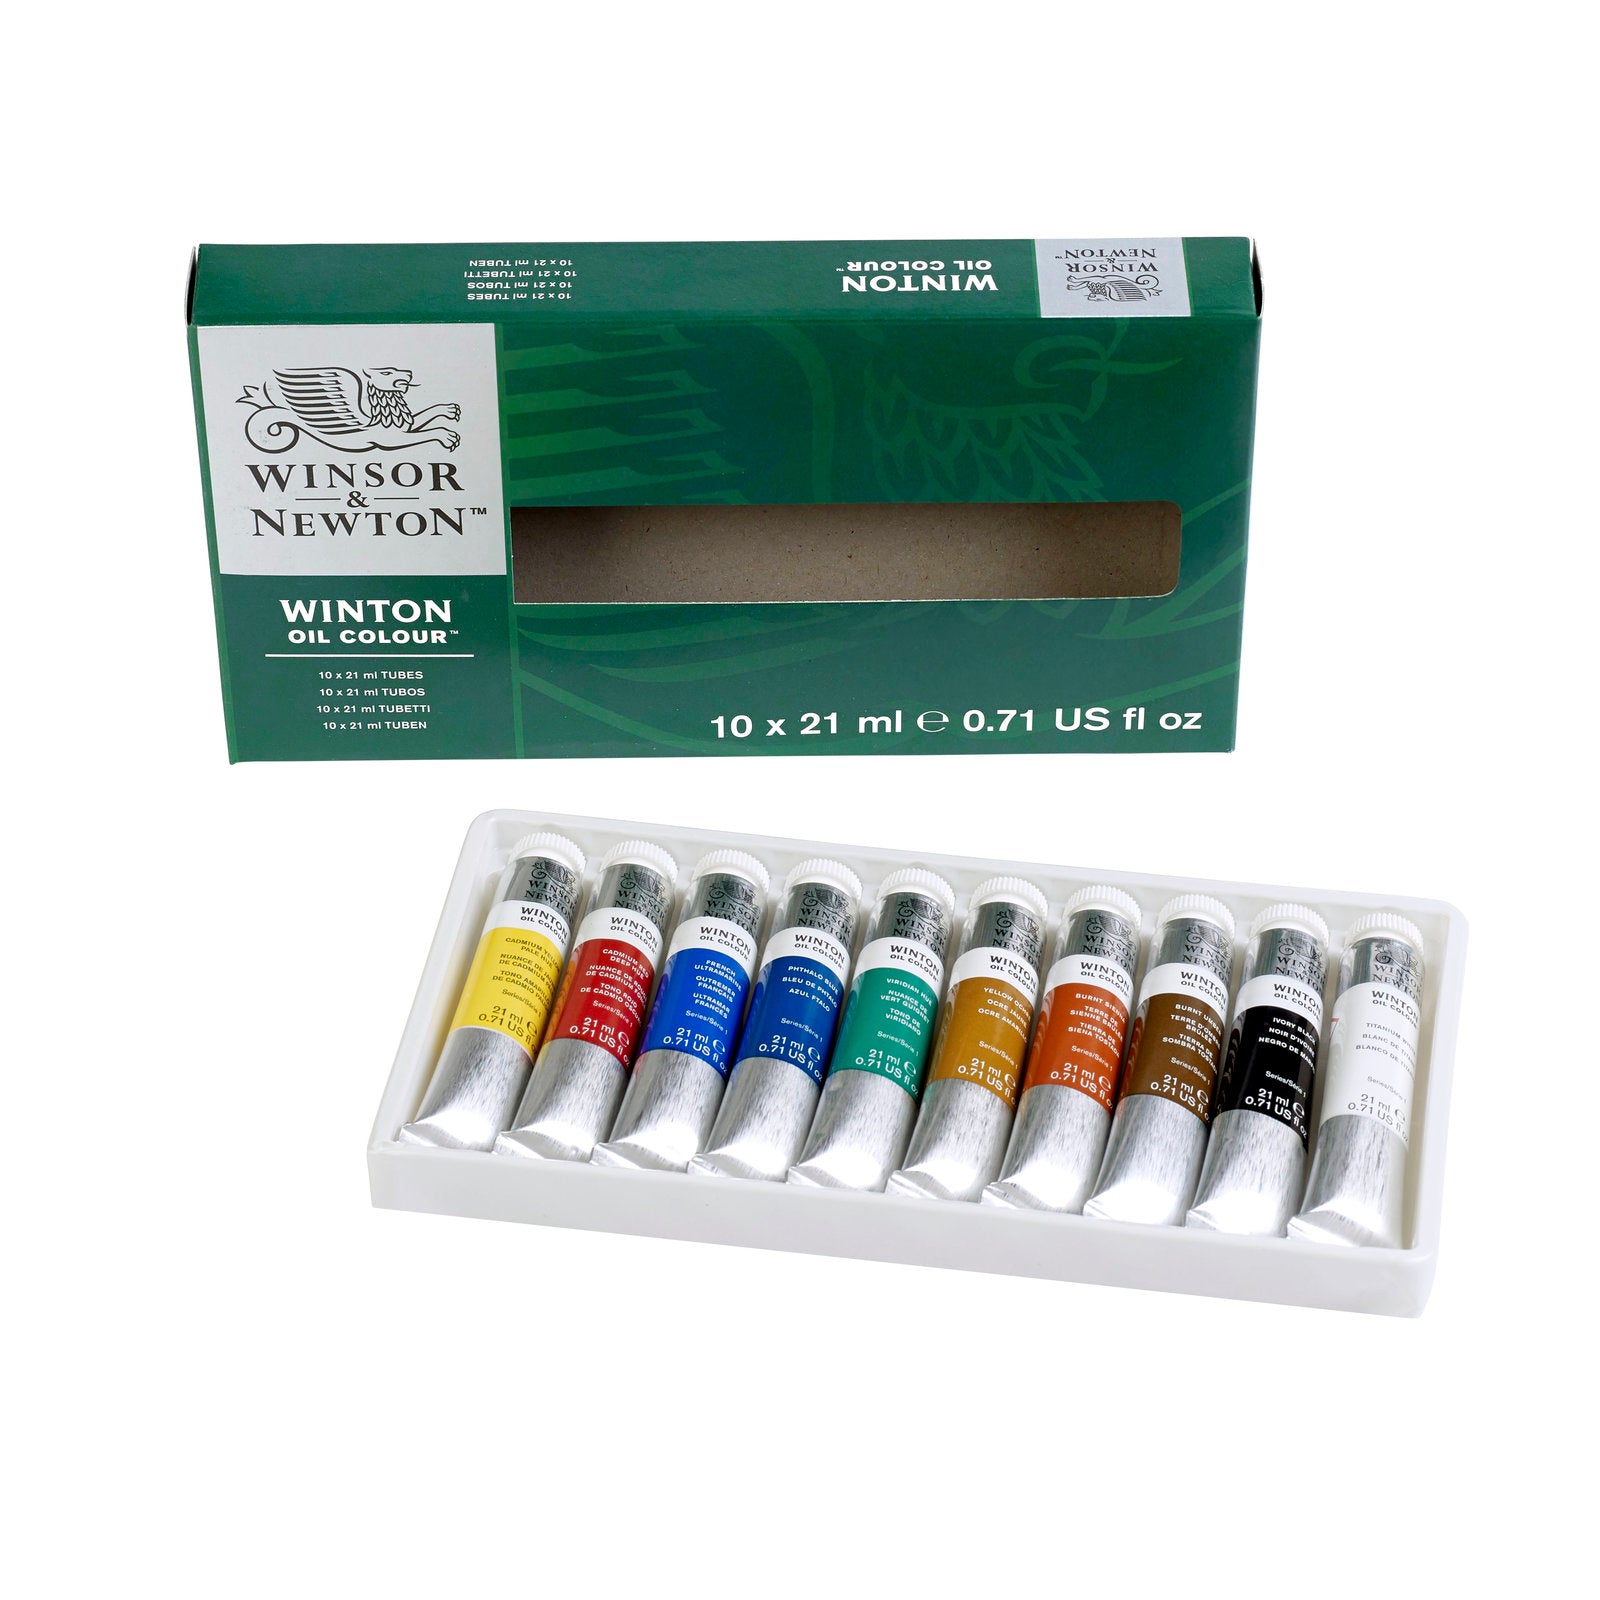 Winsor & Newton Winton Oil Colour set 10 colours x 21 ml